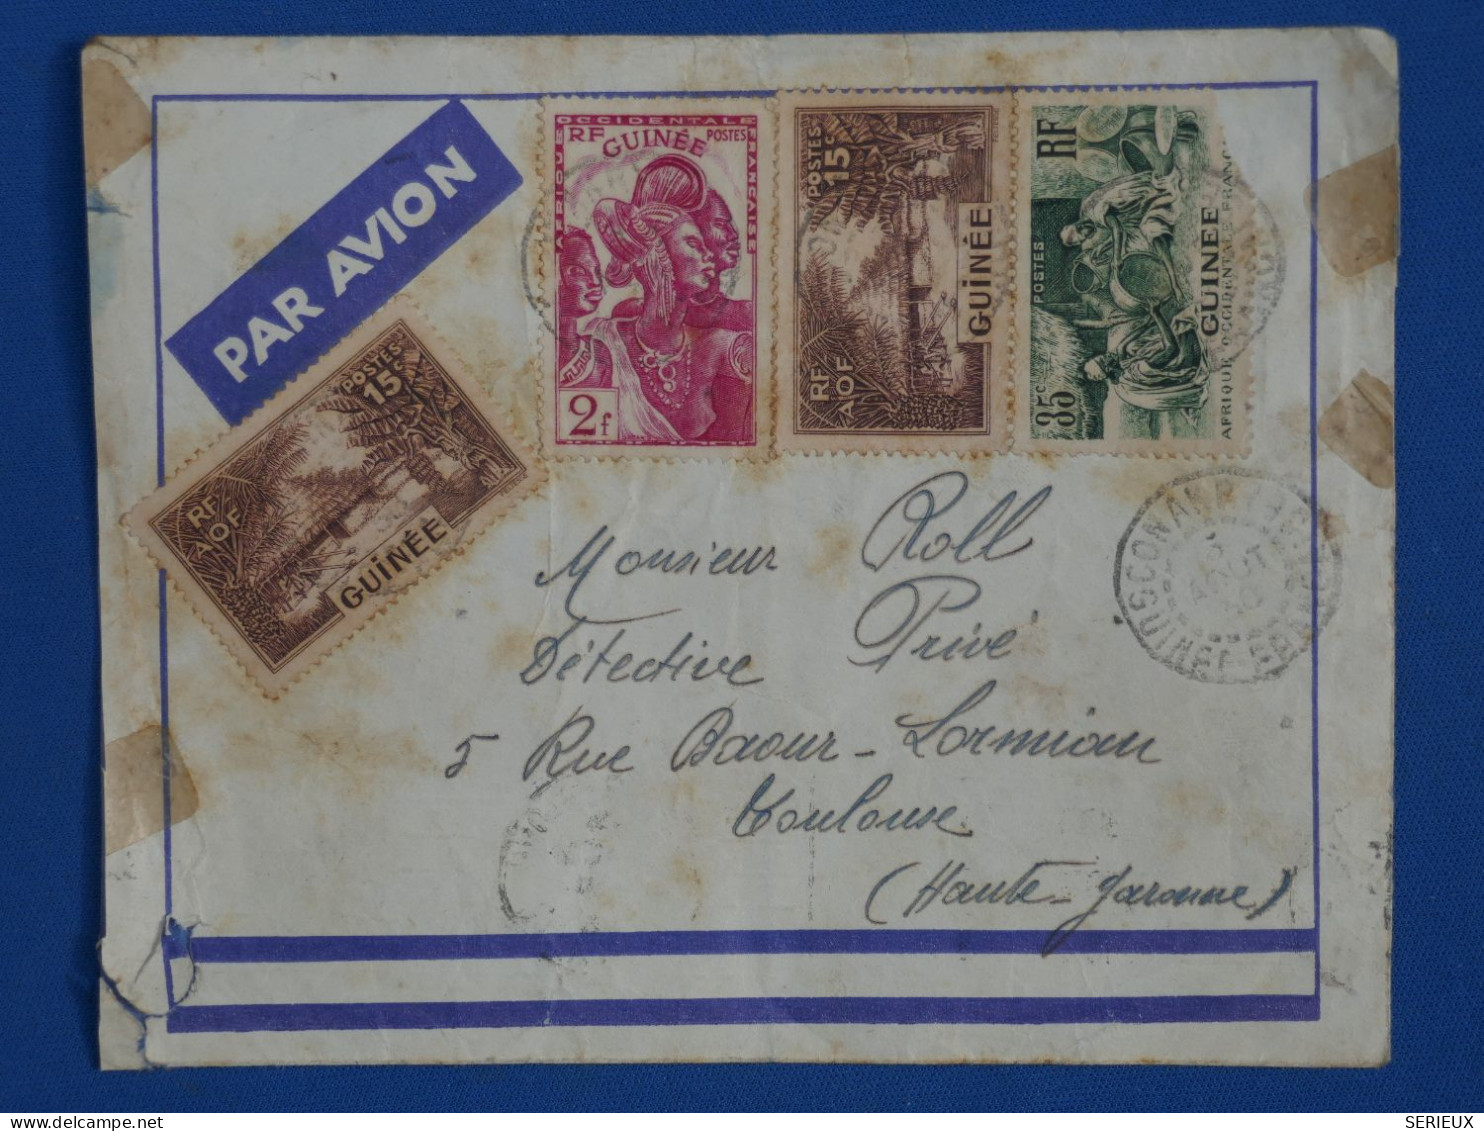 AY19 GUINEE   BELLE  LETTRE RR  1938   PAR AVION CONAKRY  A TOULOUSE  FRANCE  ++ + AFFR. INTERESSANT+ + - Covers & Documents